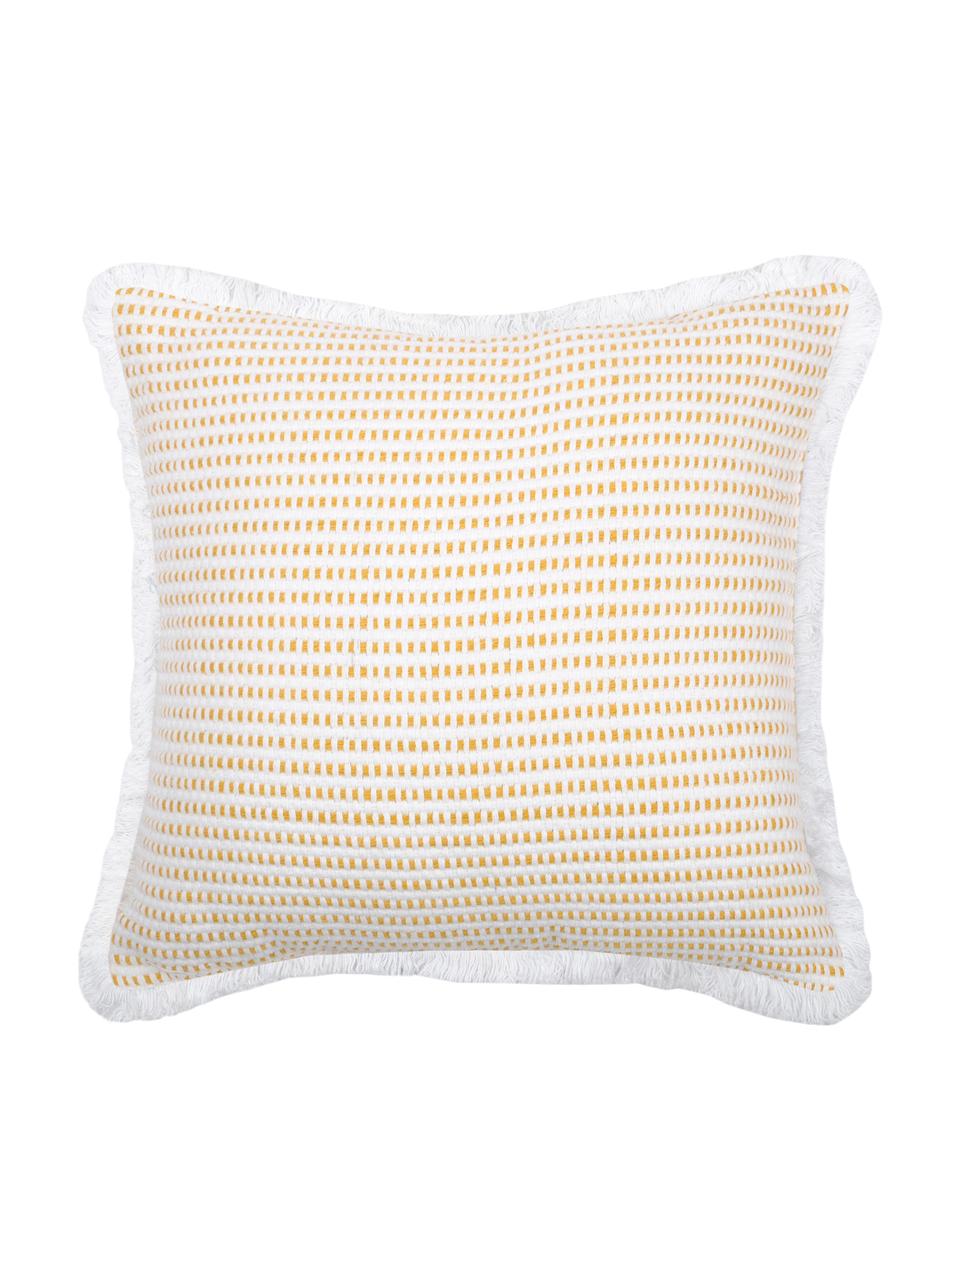 Kissen Salamanca in Gelb/Weiß, mit Inlett, 100% Baumwolle, Weiß, Gelb, 40 x 40 cm